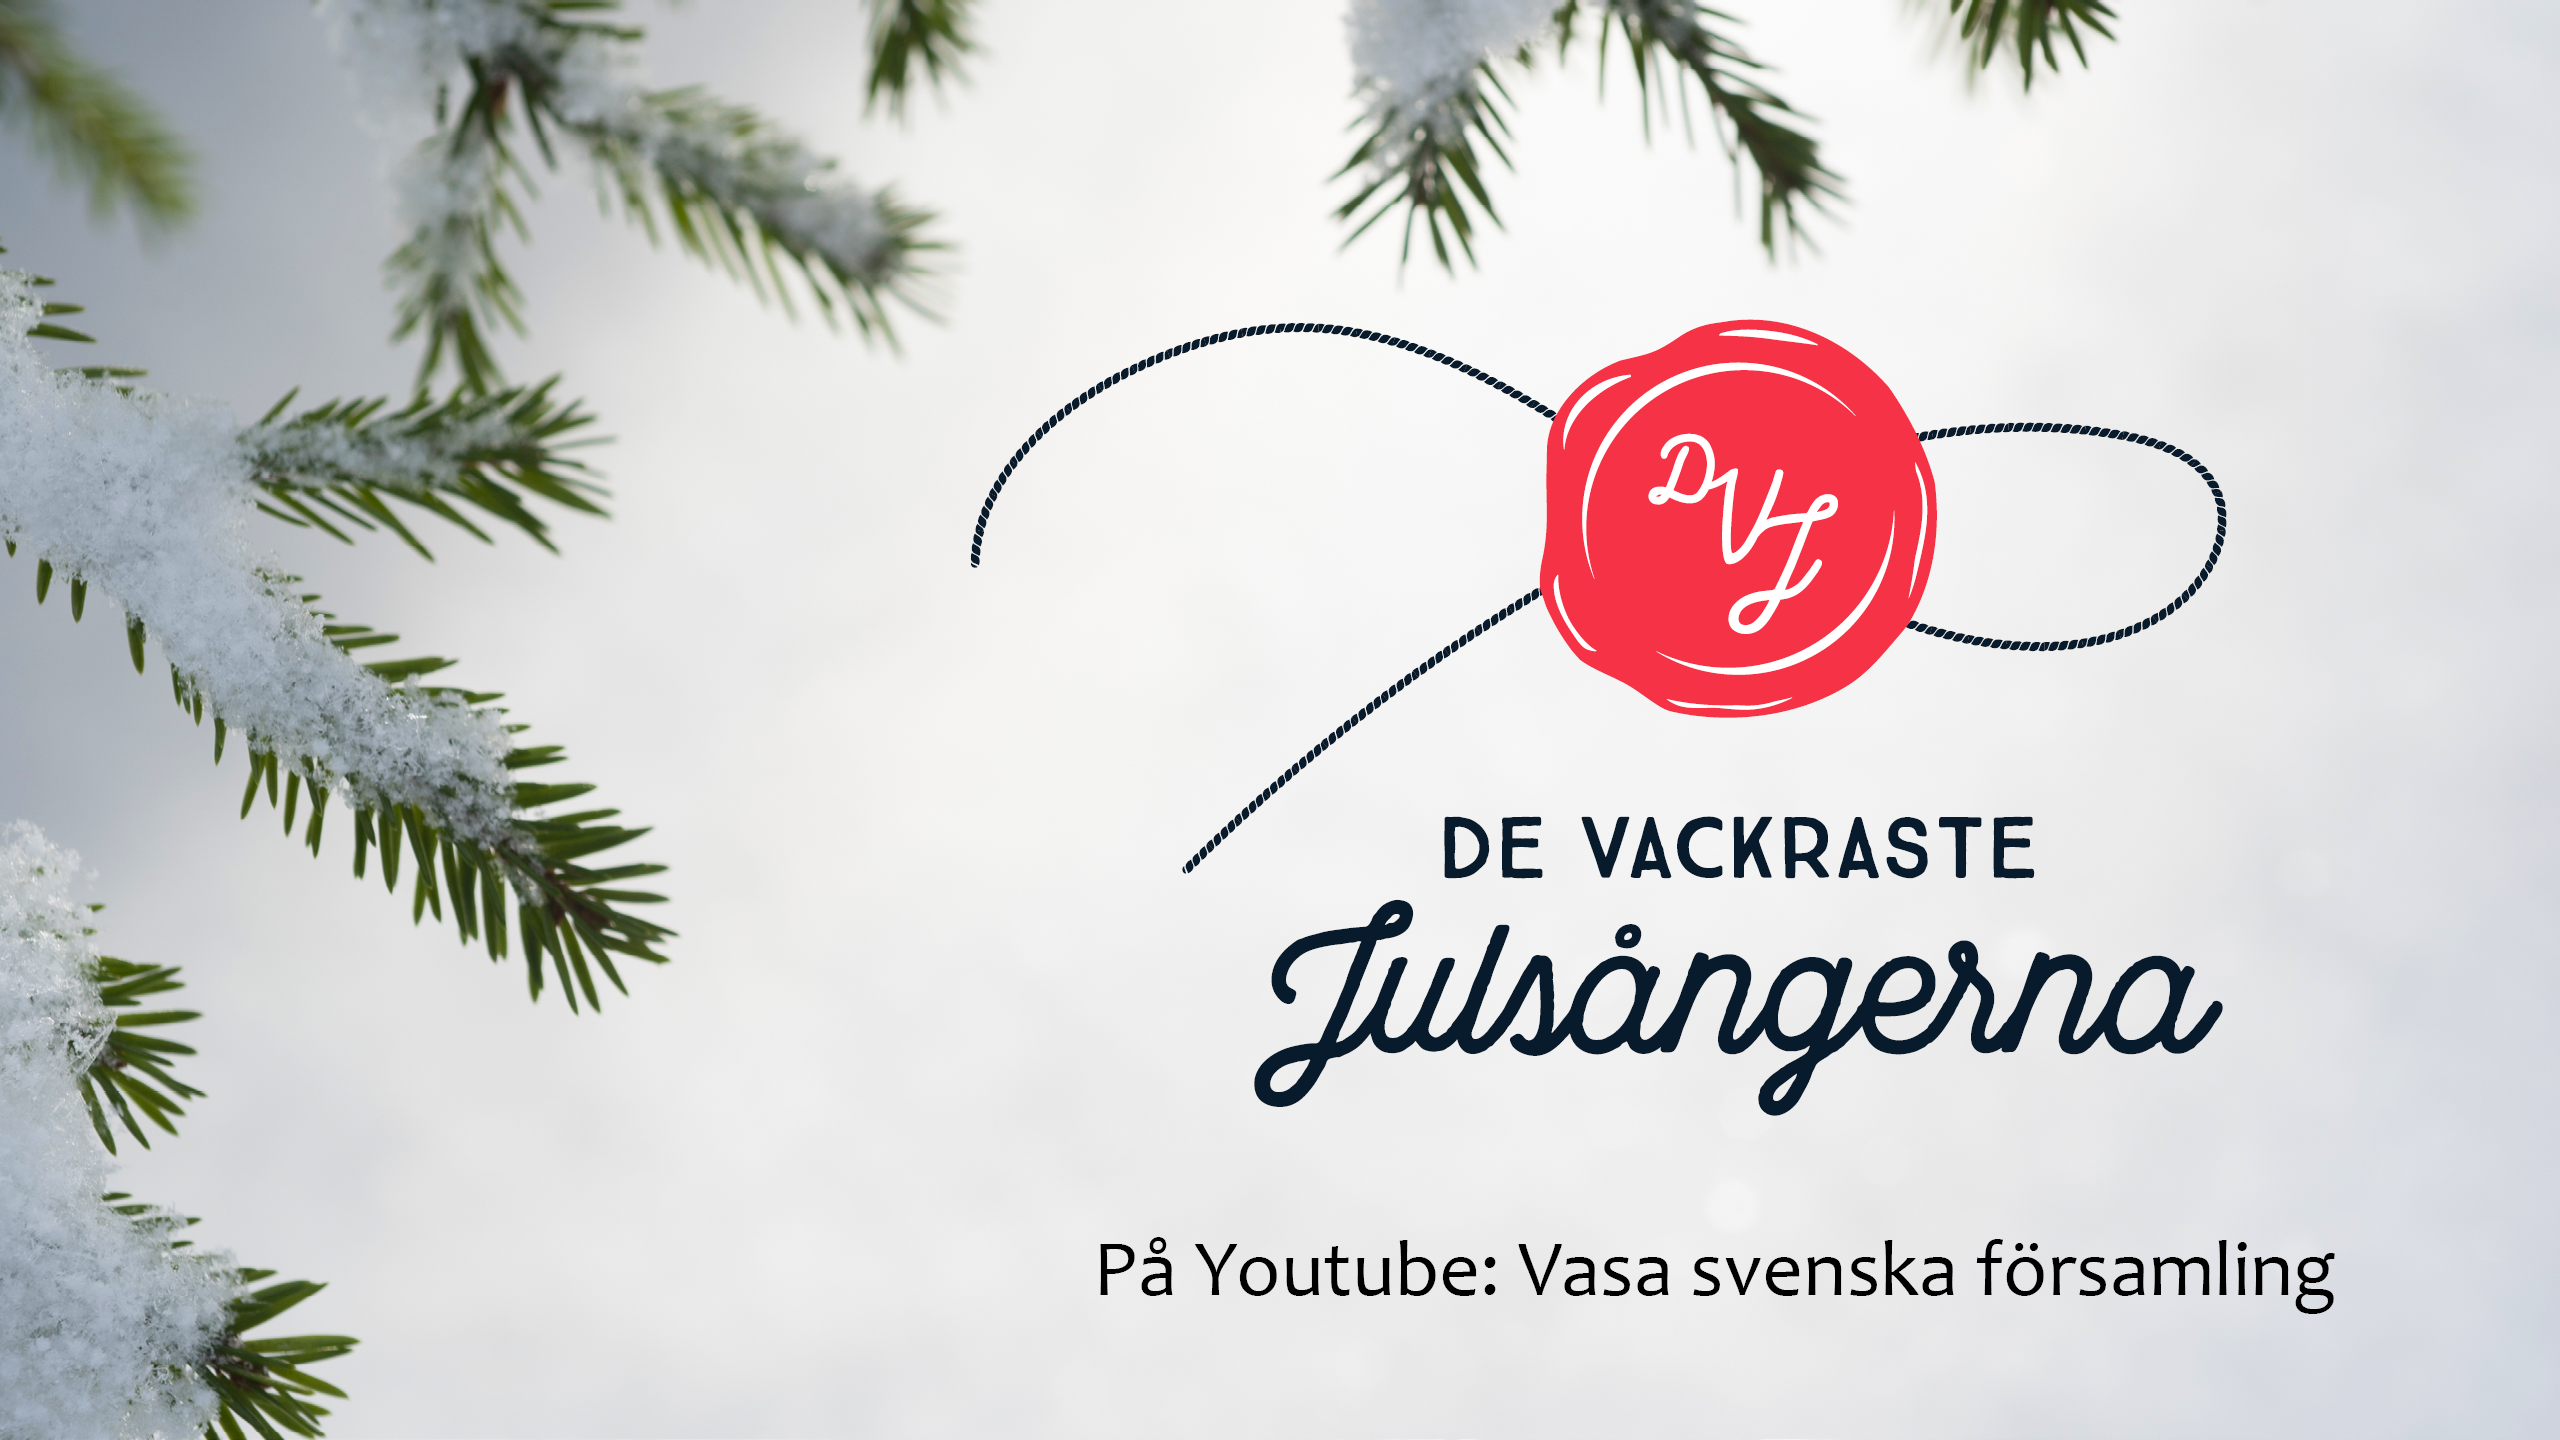 Snötyngd grankvist. Text: De vackraste julsångerna på Youtube: Vasa svenska församling.